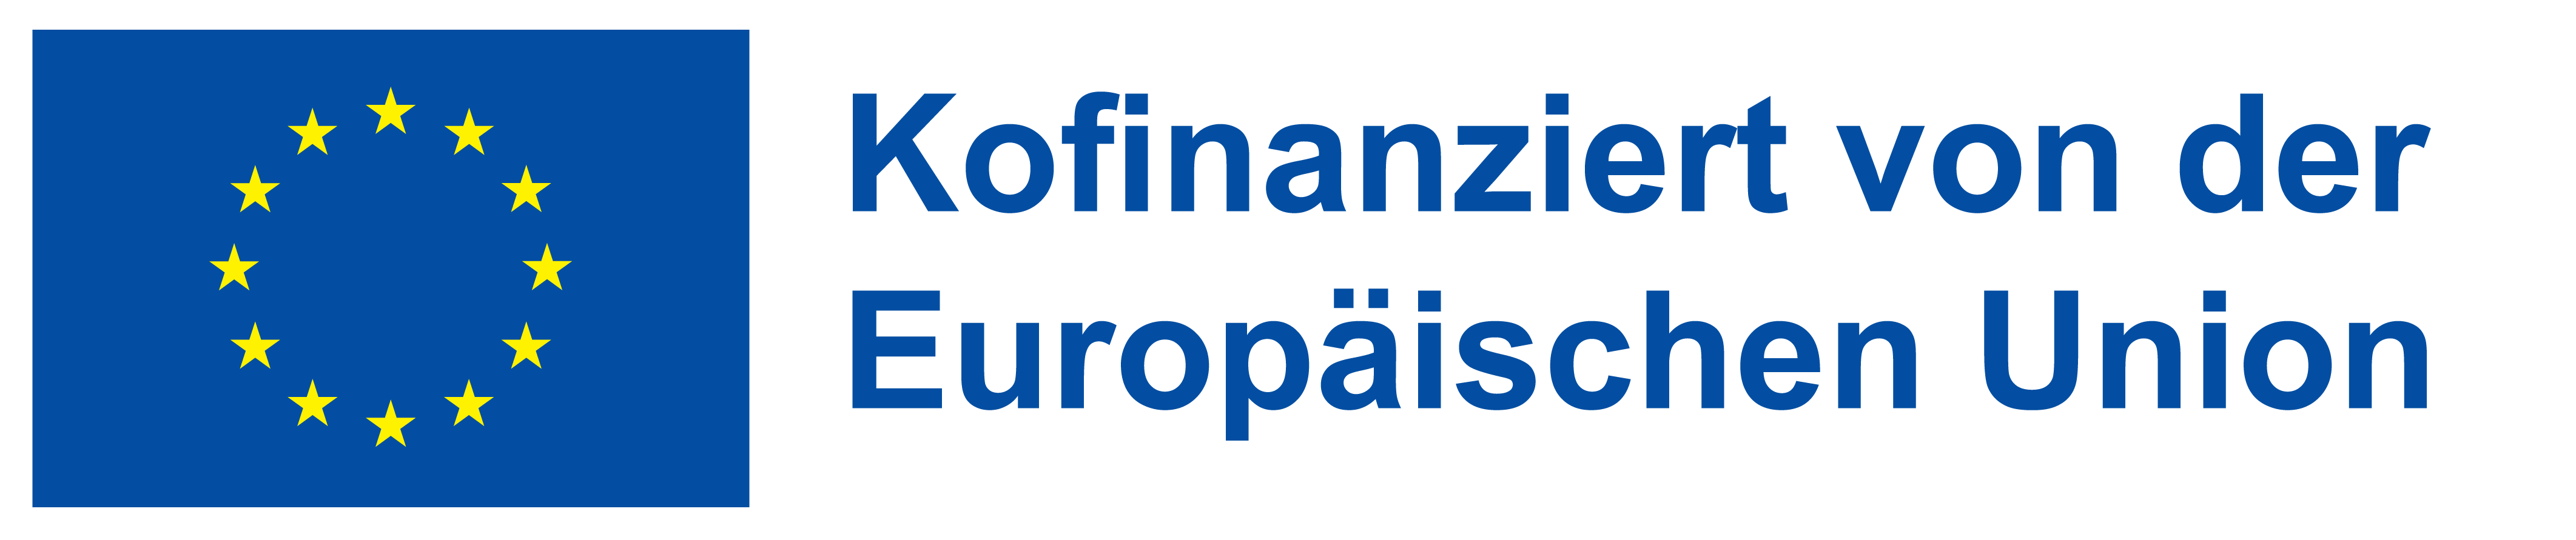 Logo der Europäischen Union mit Schriftzug 'Konfinanziert von der Europäischen Union'